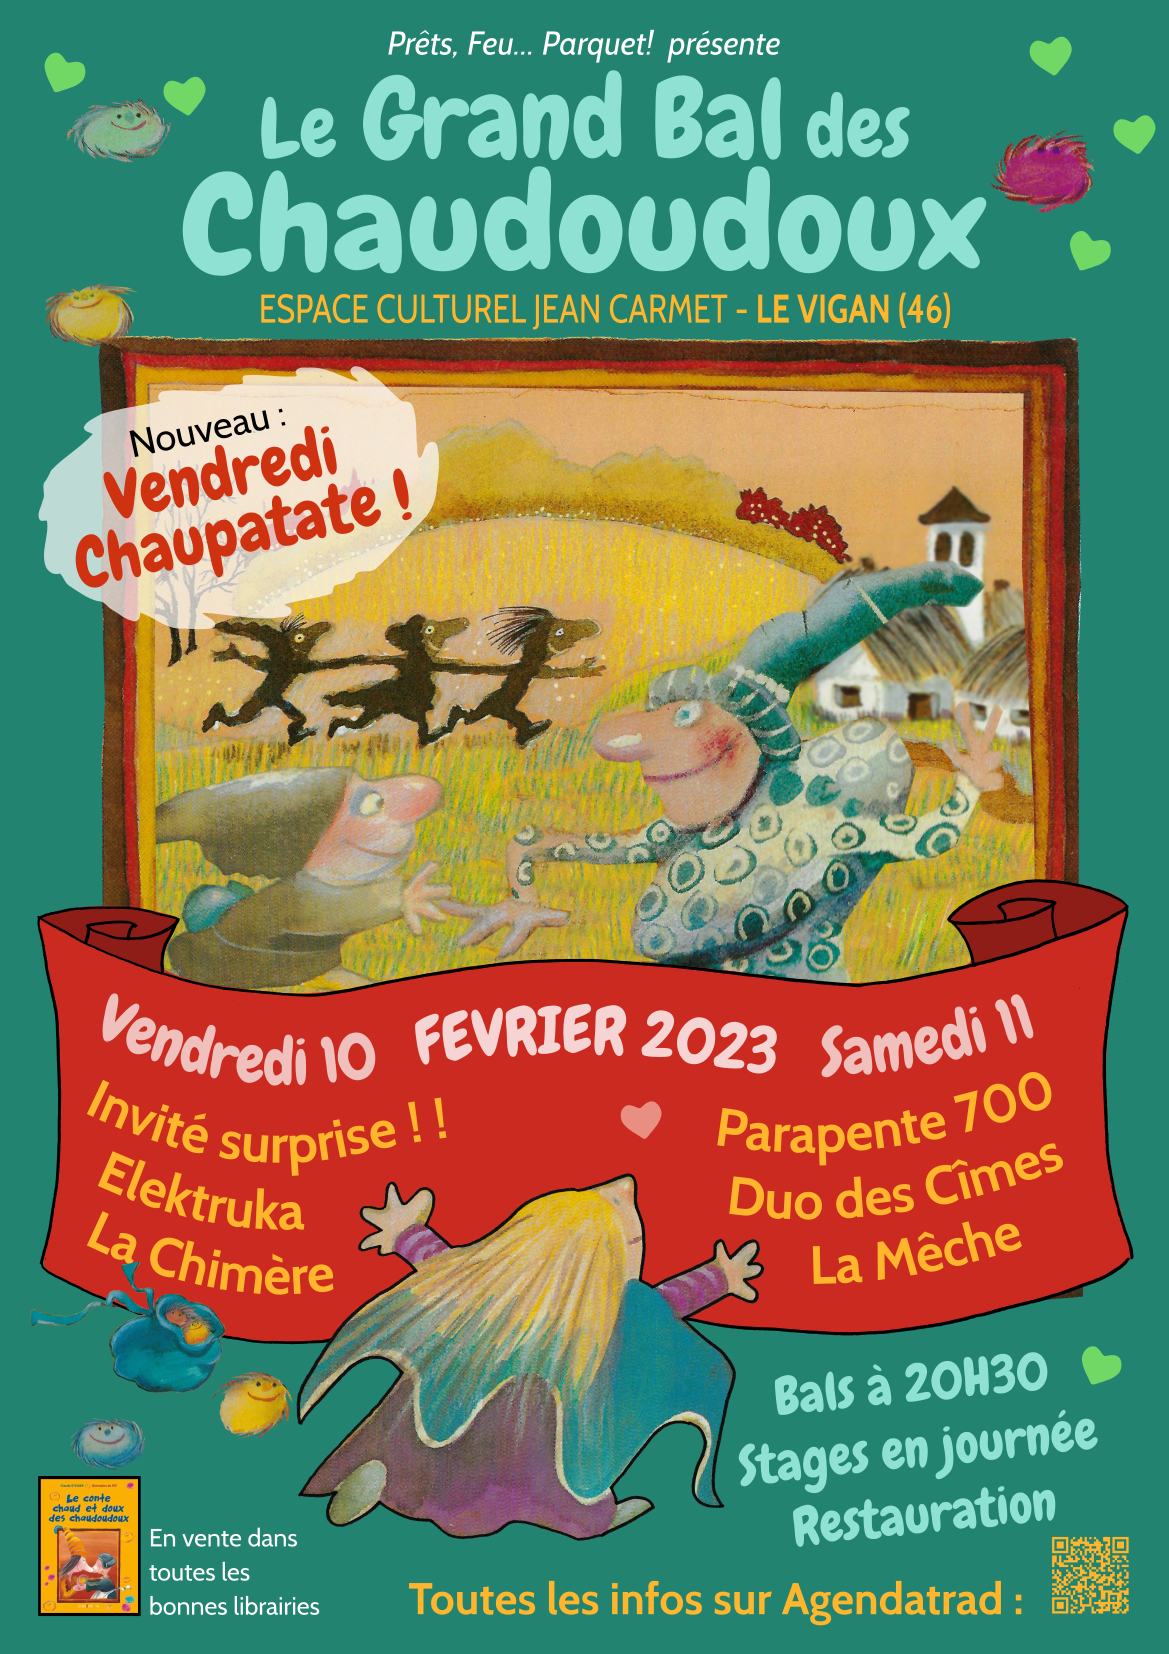 Chaudoudoux 2023 definitive